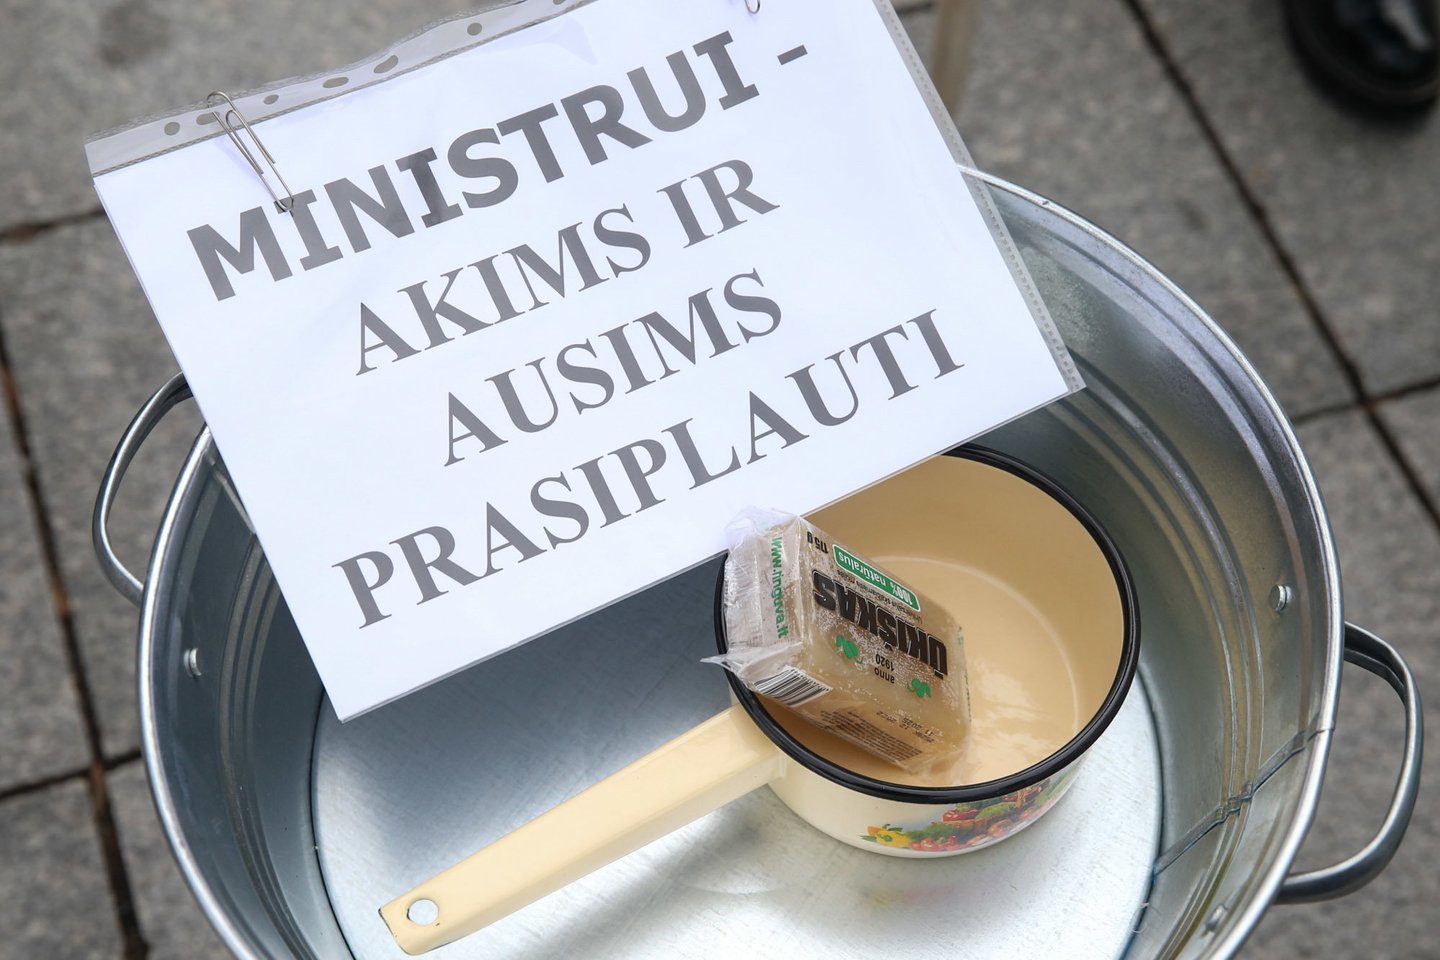 Krentančiomis pieno supirkimo kainomis nepatenkinti ūkininkai kovo 23 dieną planuoja didelę protesto akciją prie Seimo.<br>R.Danisevičiaus nuotr.